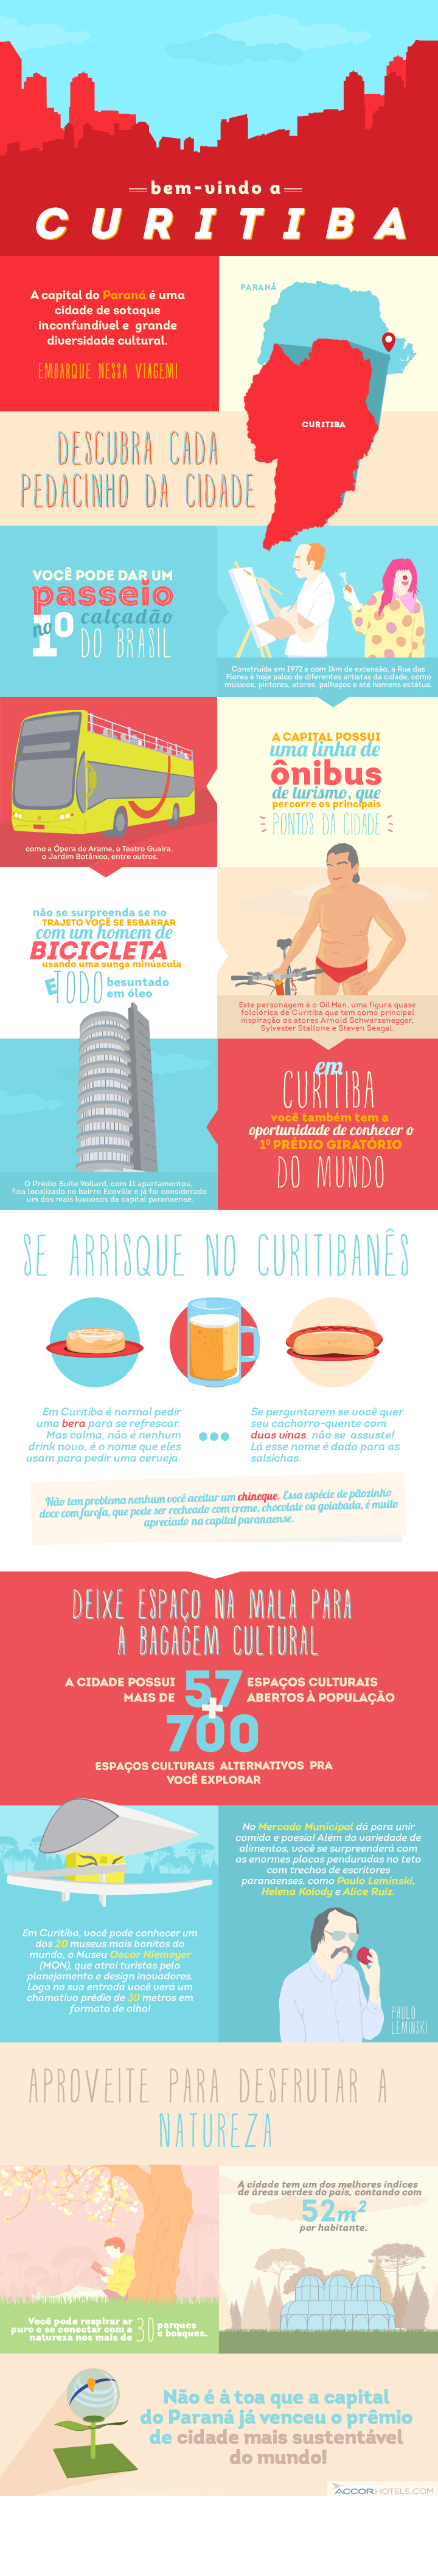 Motivos/Curiosidades para você conhecer de Curitiba